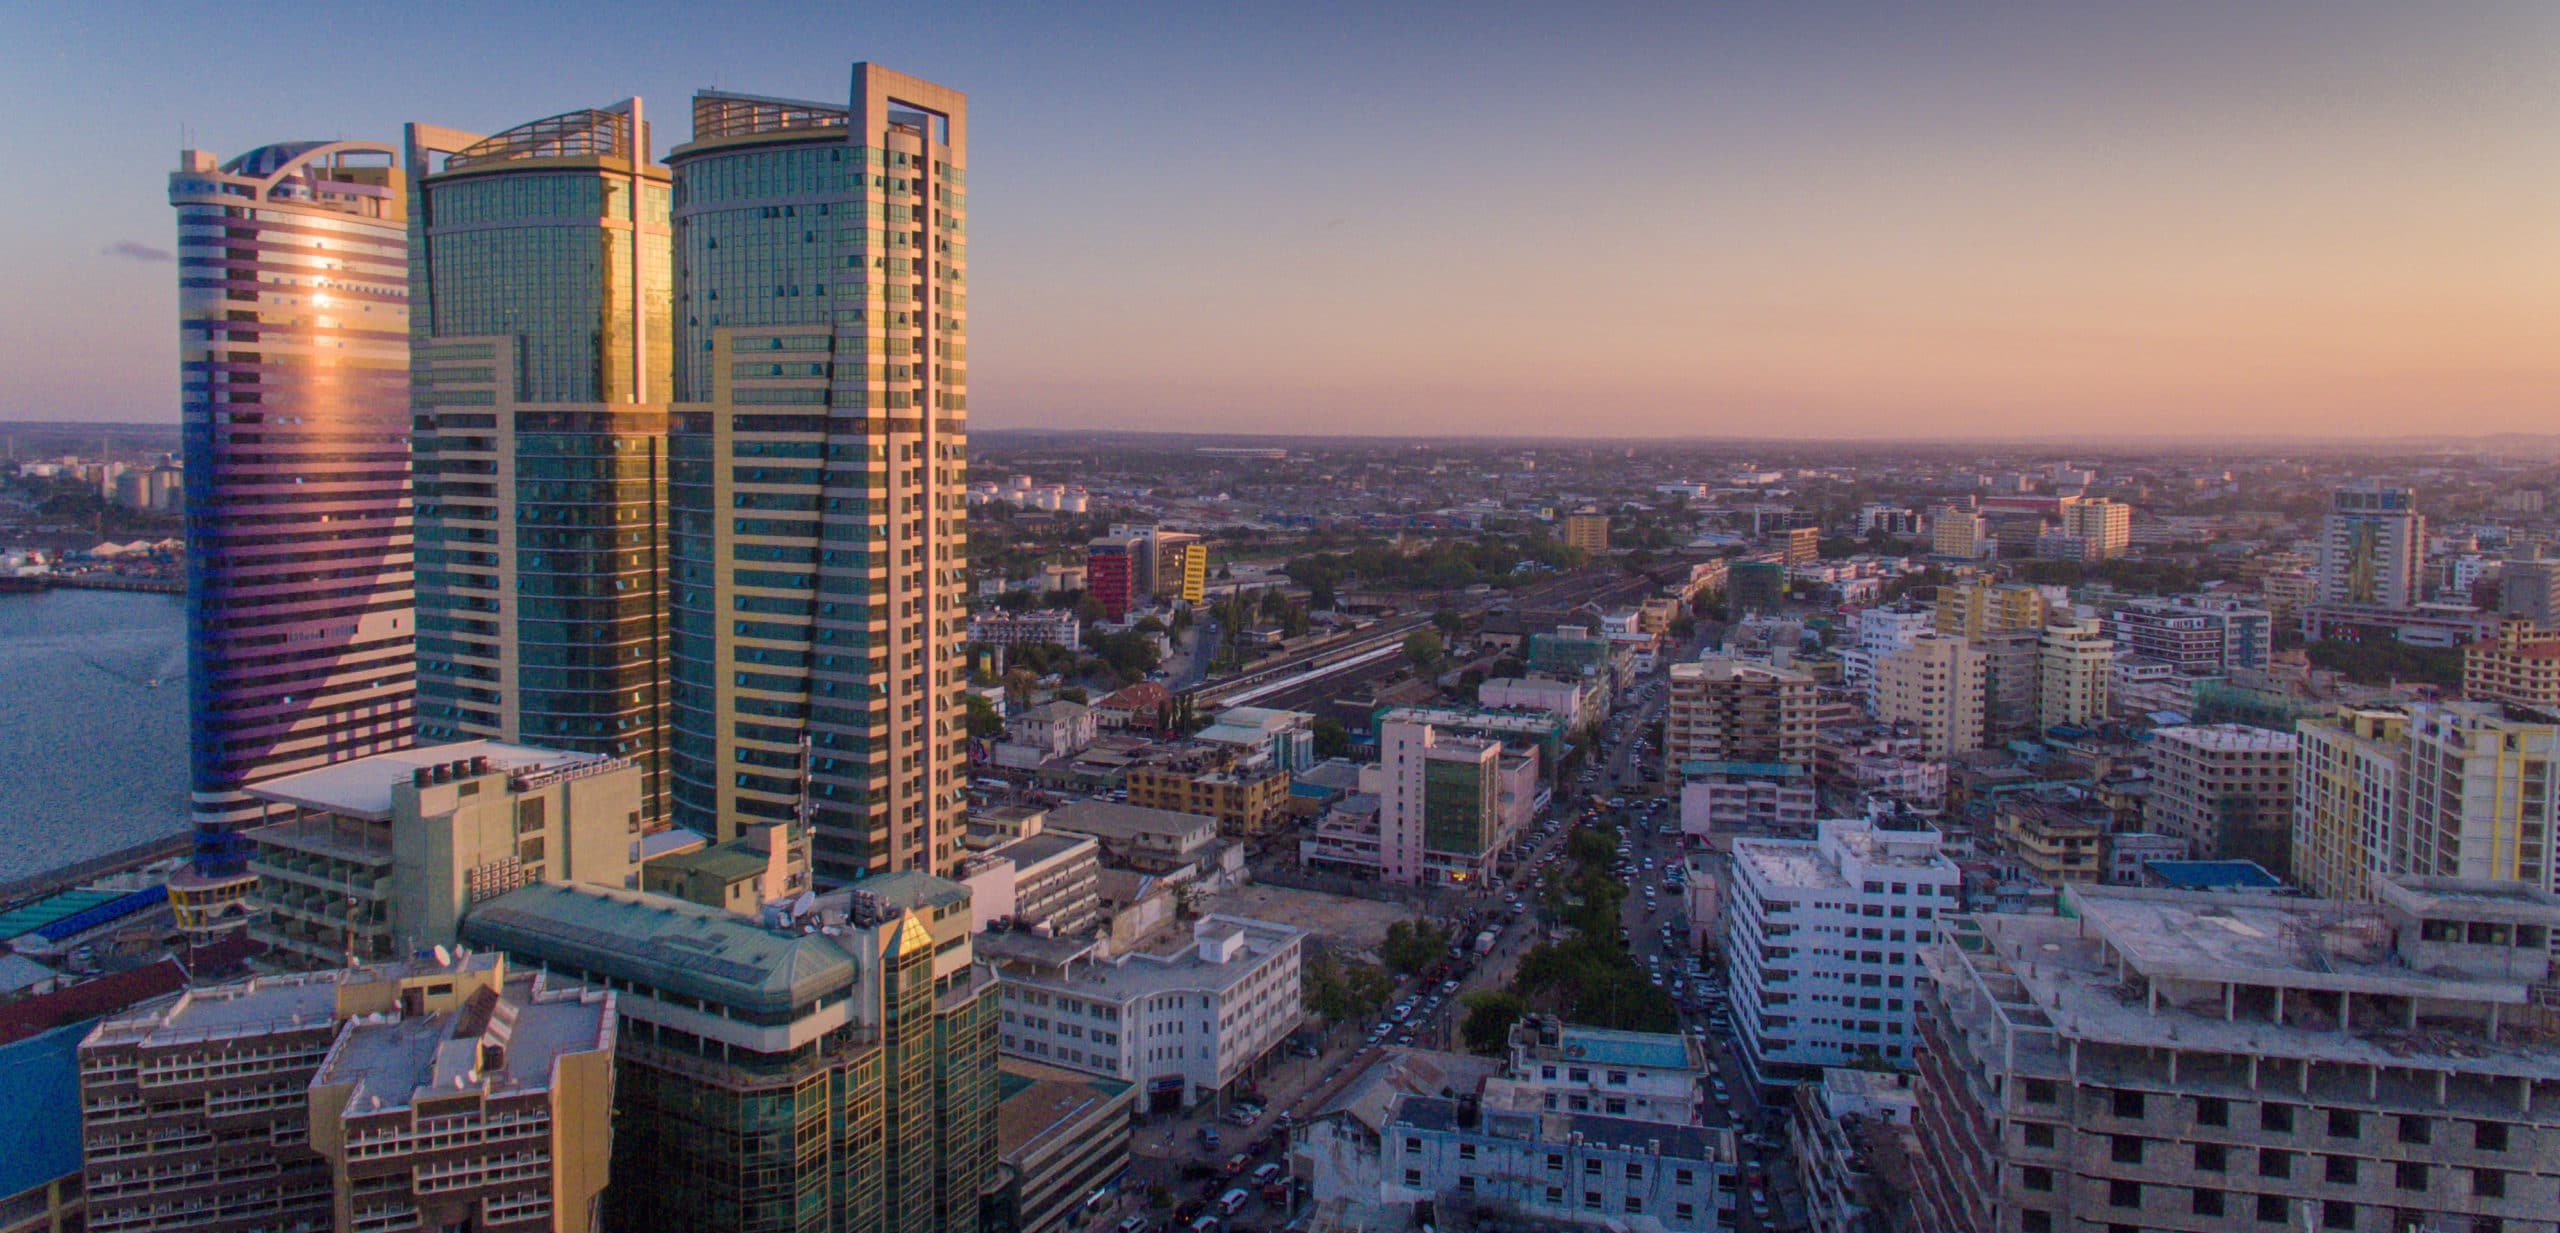 Dar es Salaam city scape